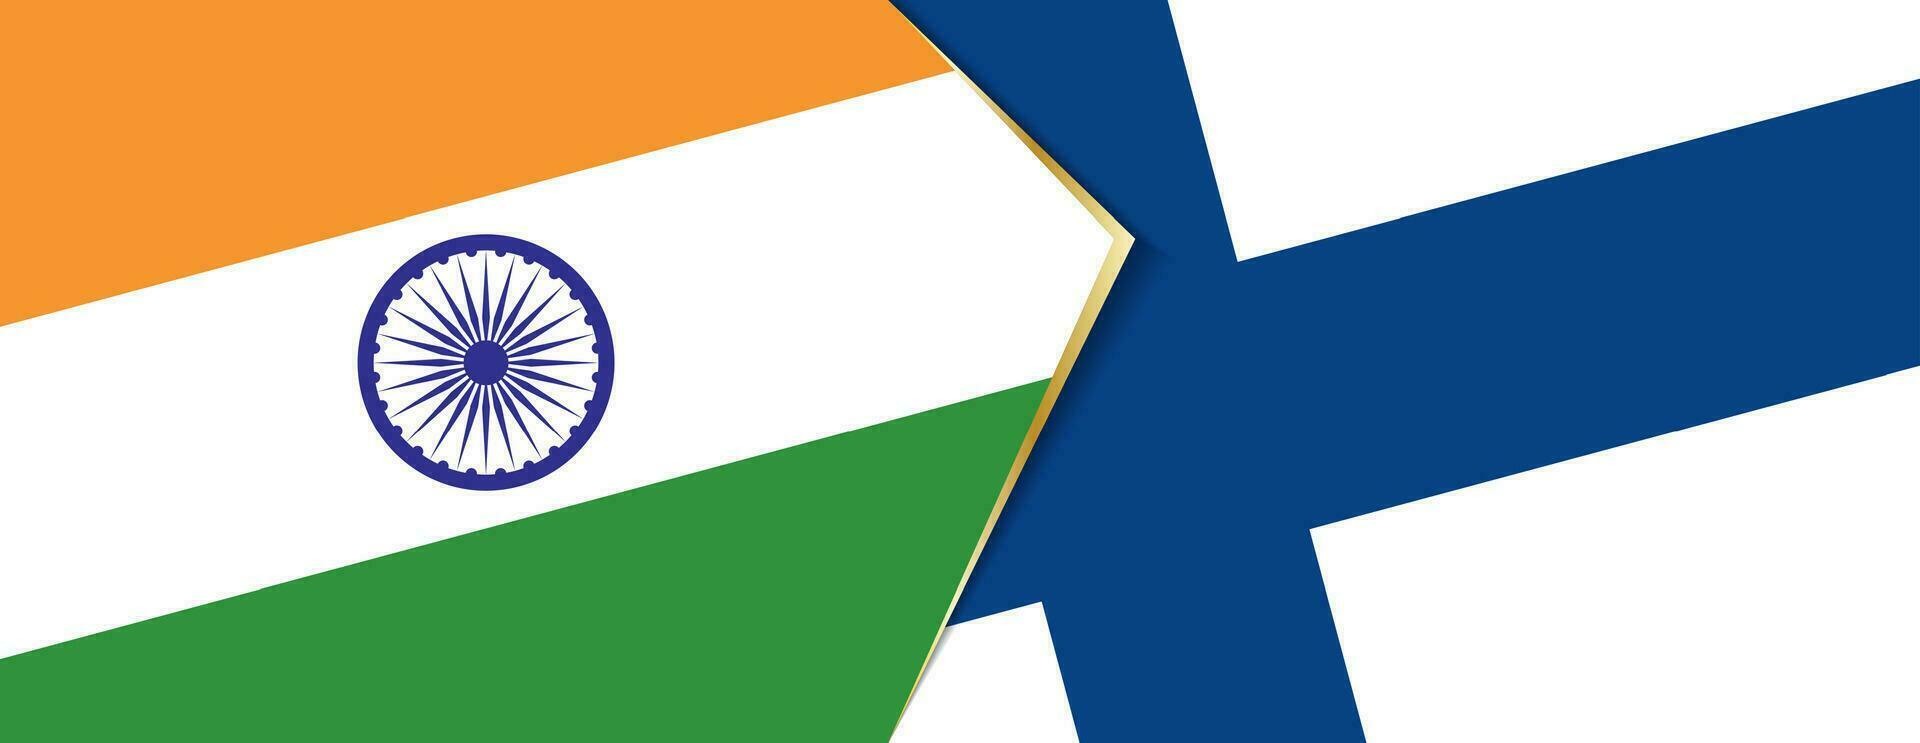 India y Finlandia banderas, dos vector banderas